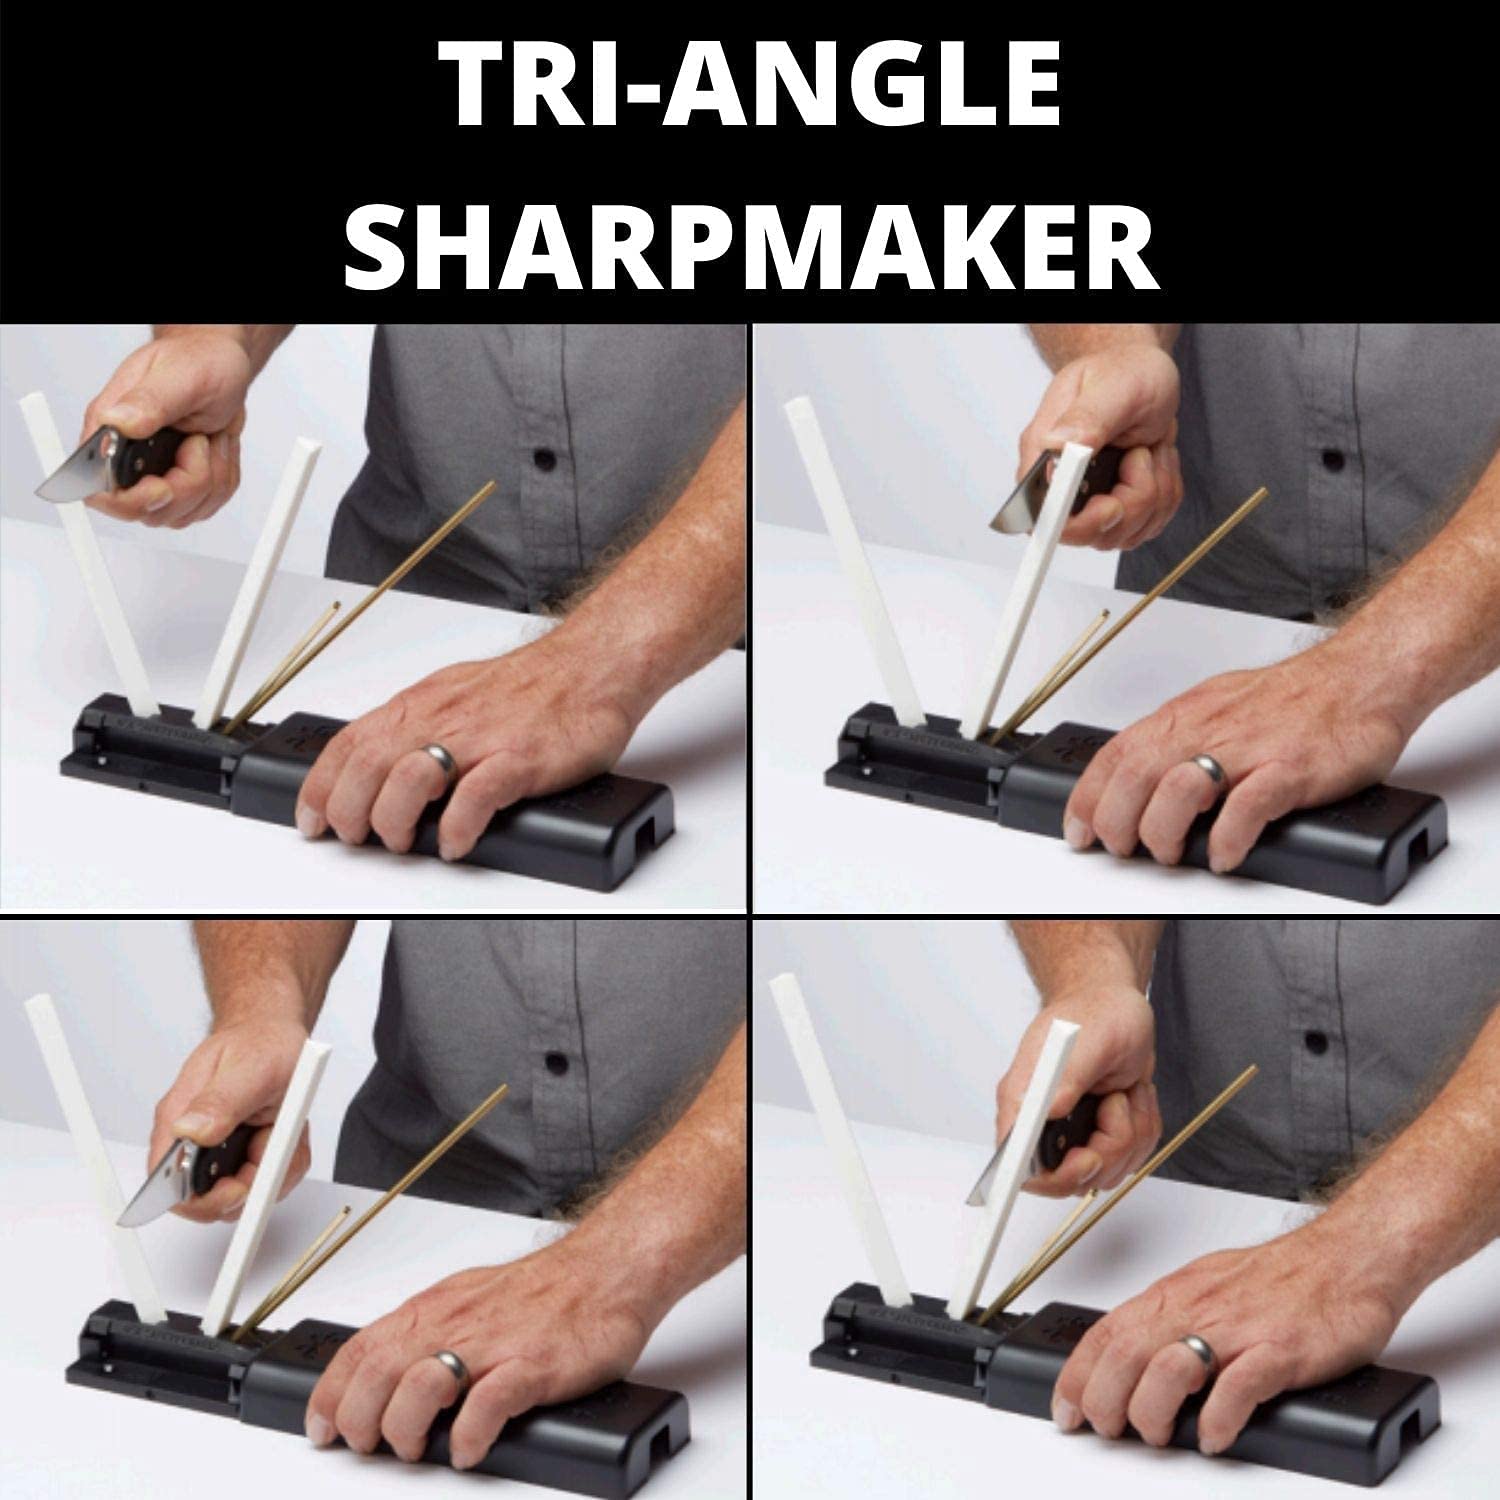 Spyderco Sharpmaker Triangle Sharpener